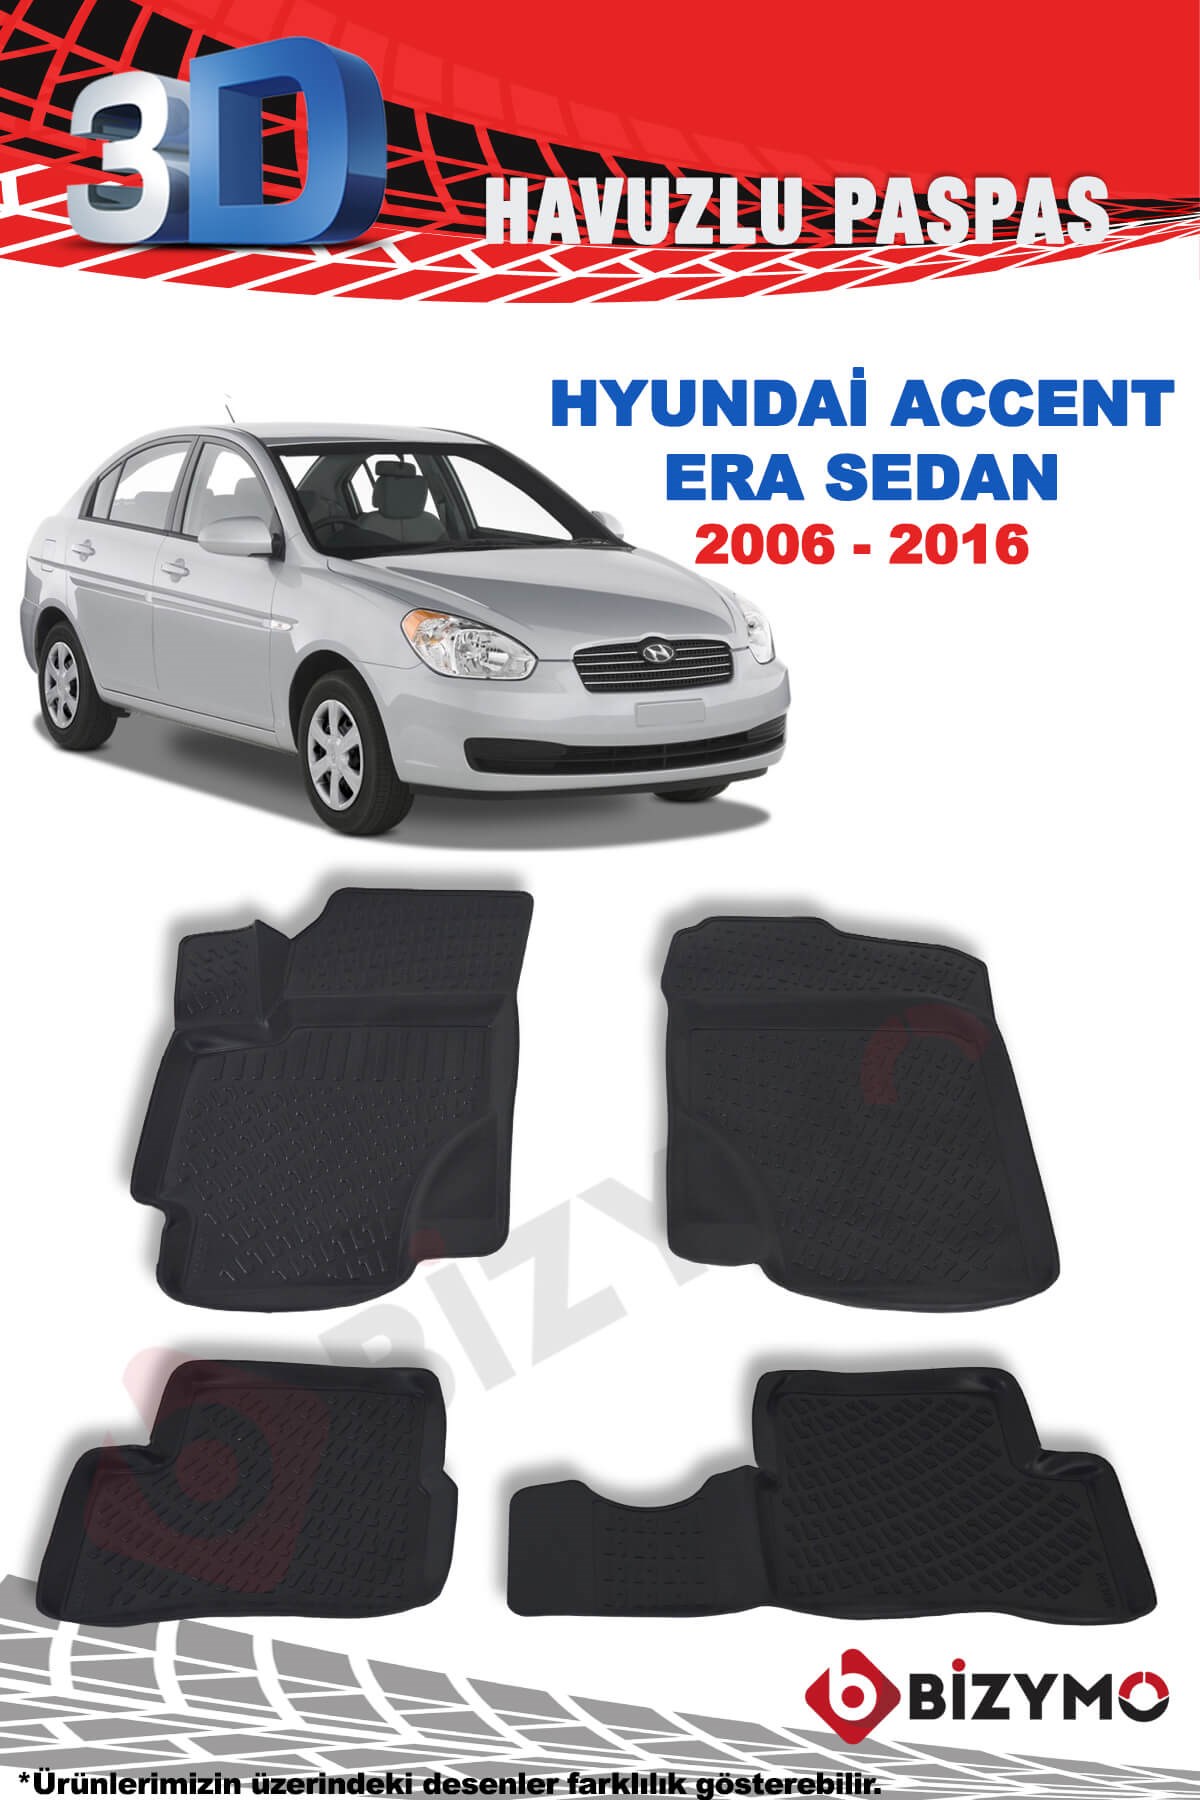 Hyundai Accent Era Sedan 2006-2016 3D Paspas Takımı Bizymo - Bizim Oto